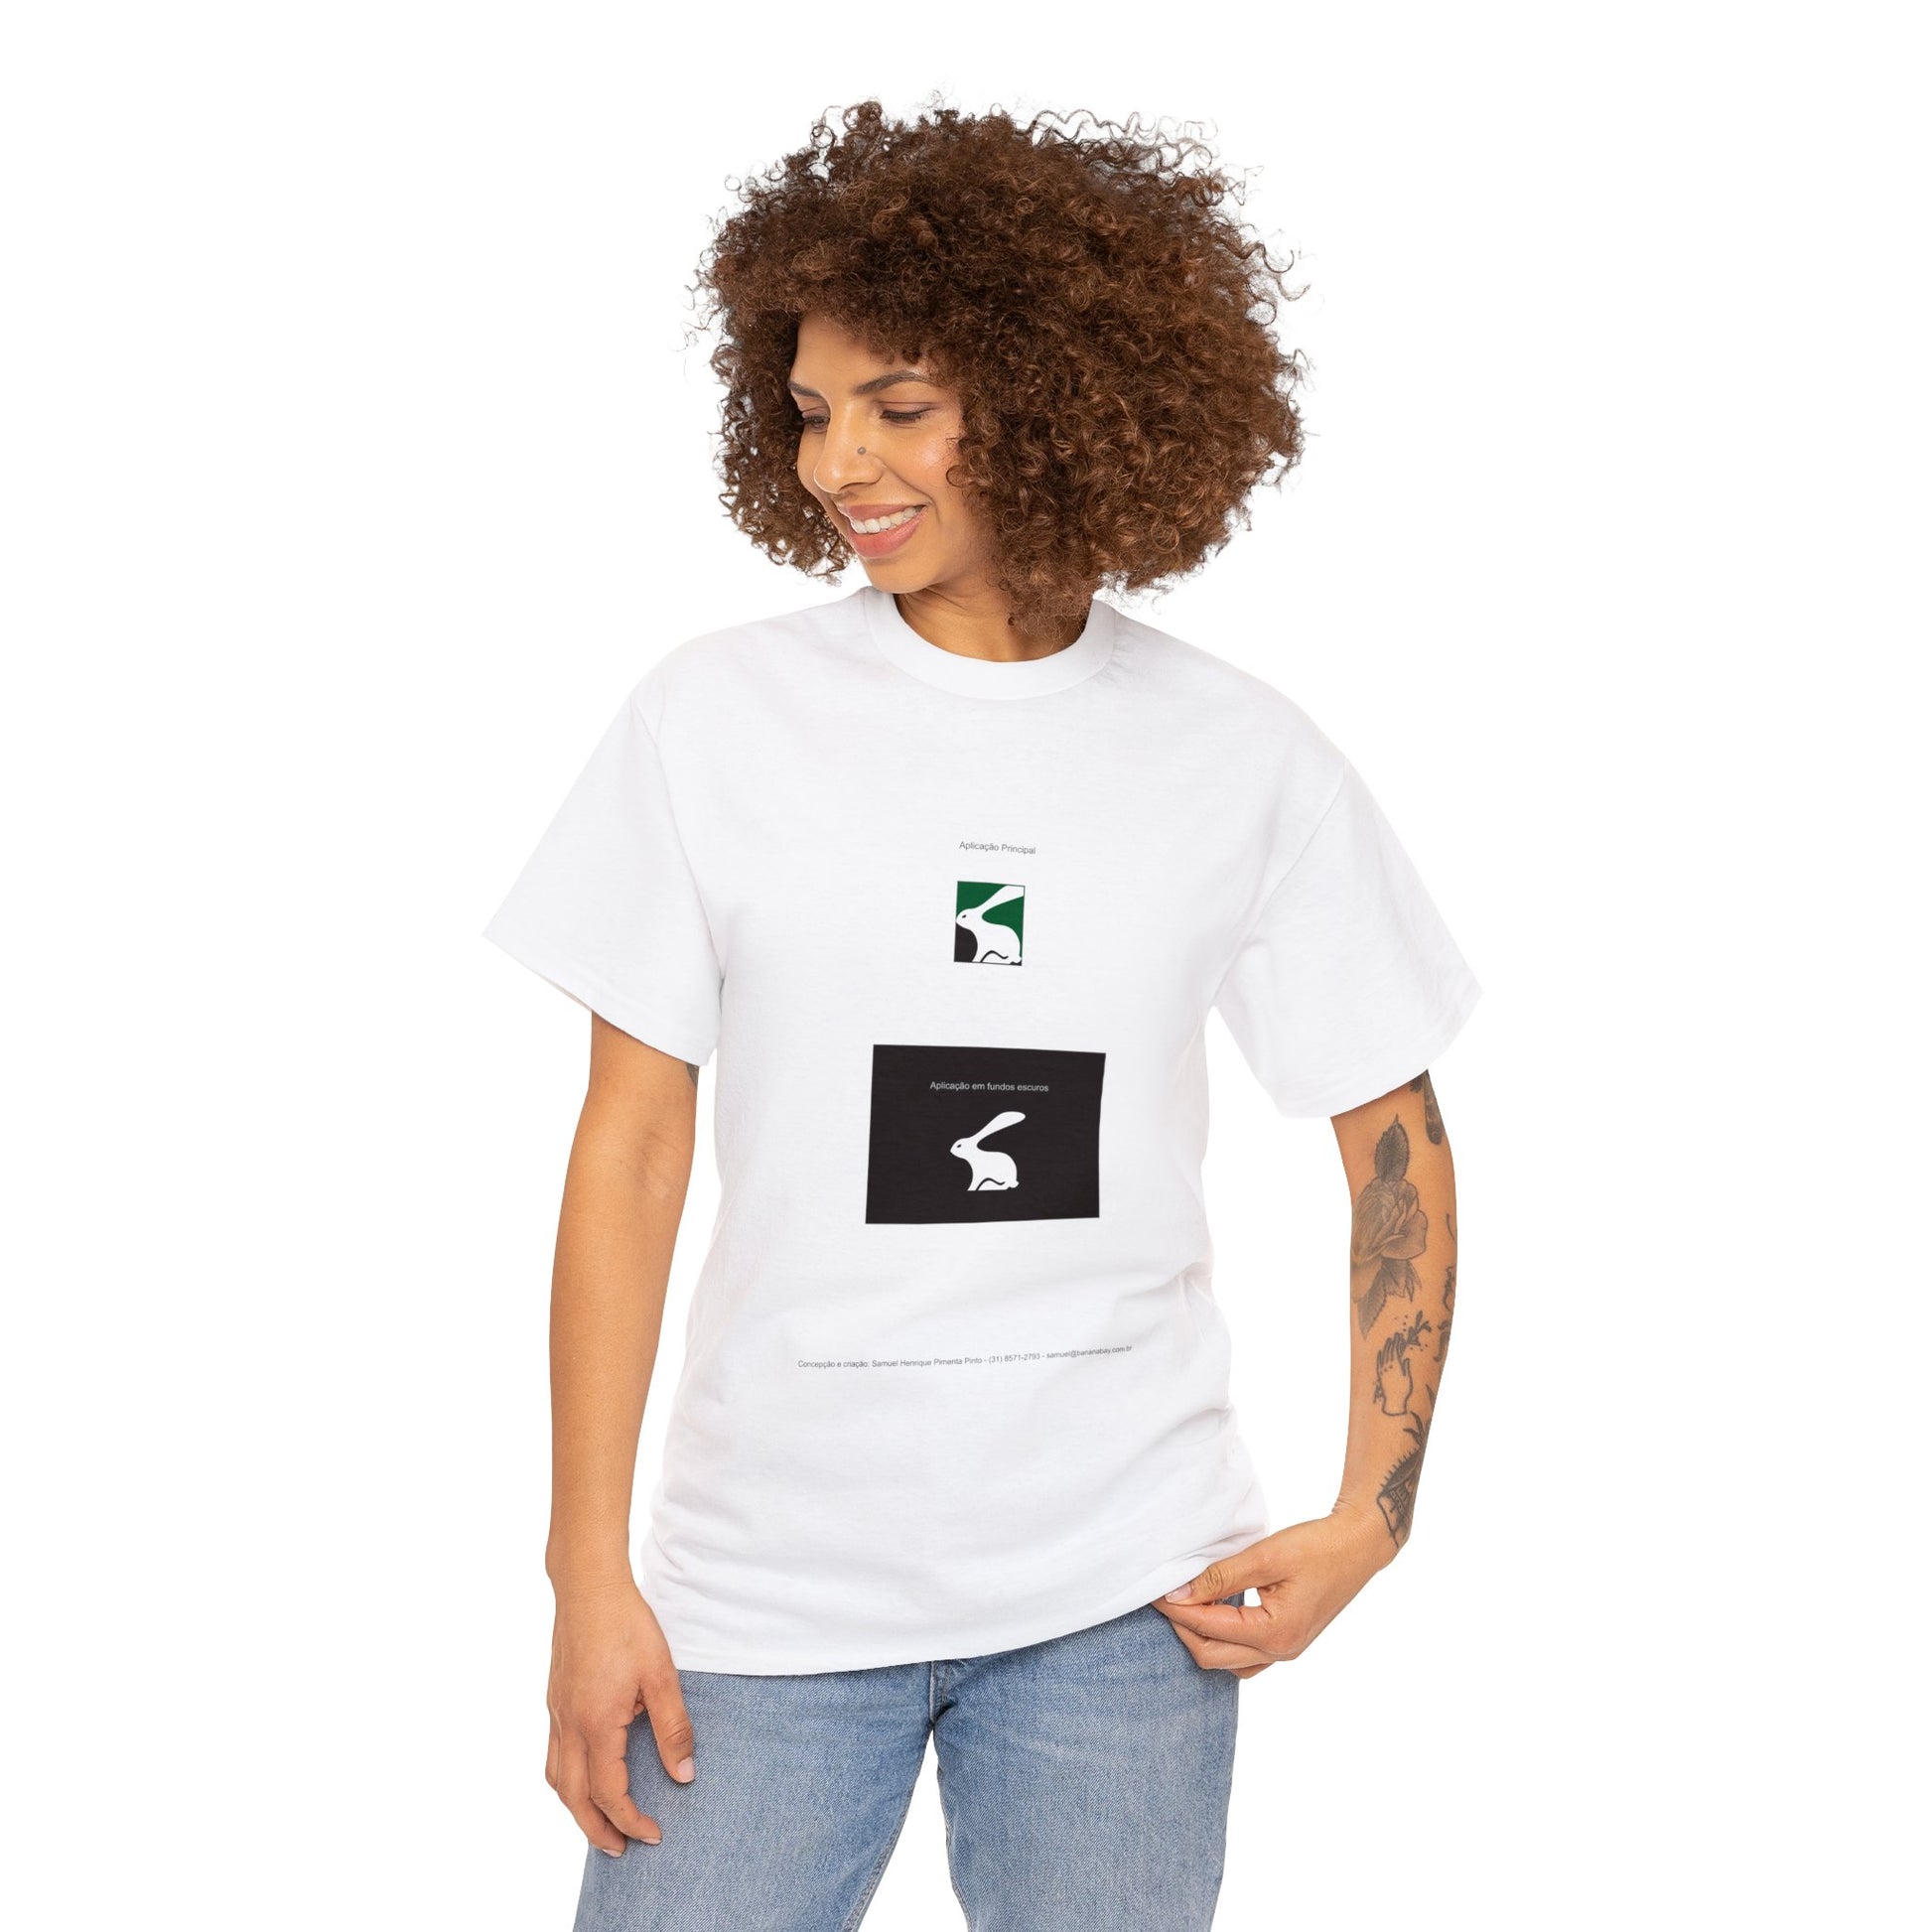 "Marca do Coelho" - América Futebol Clube - Minas Gerais Unisex Heavy Cotton T-shirt